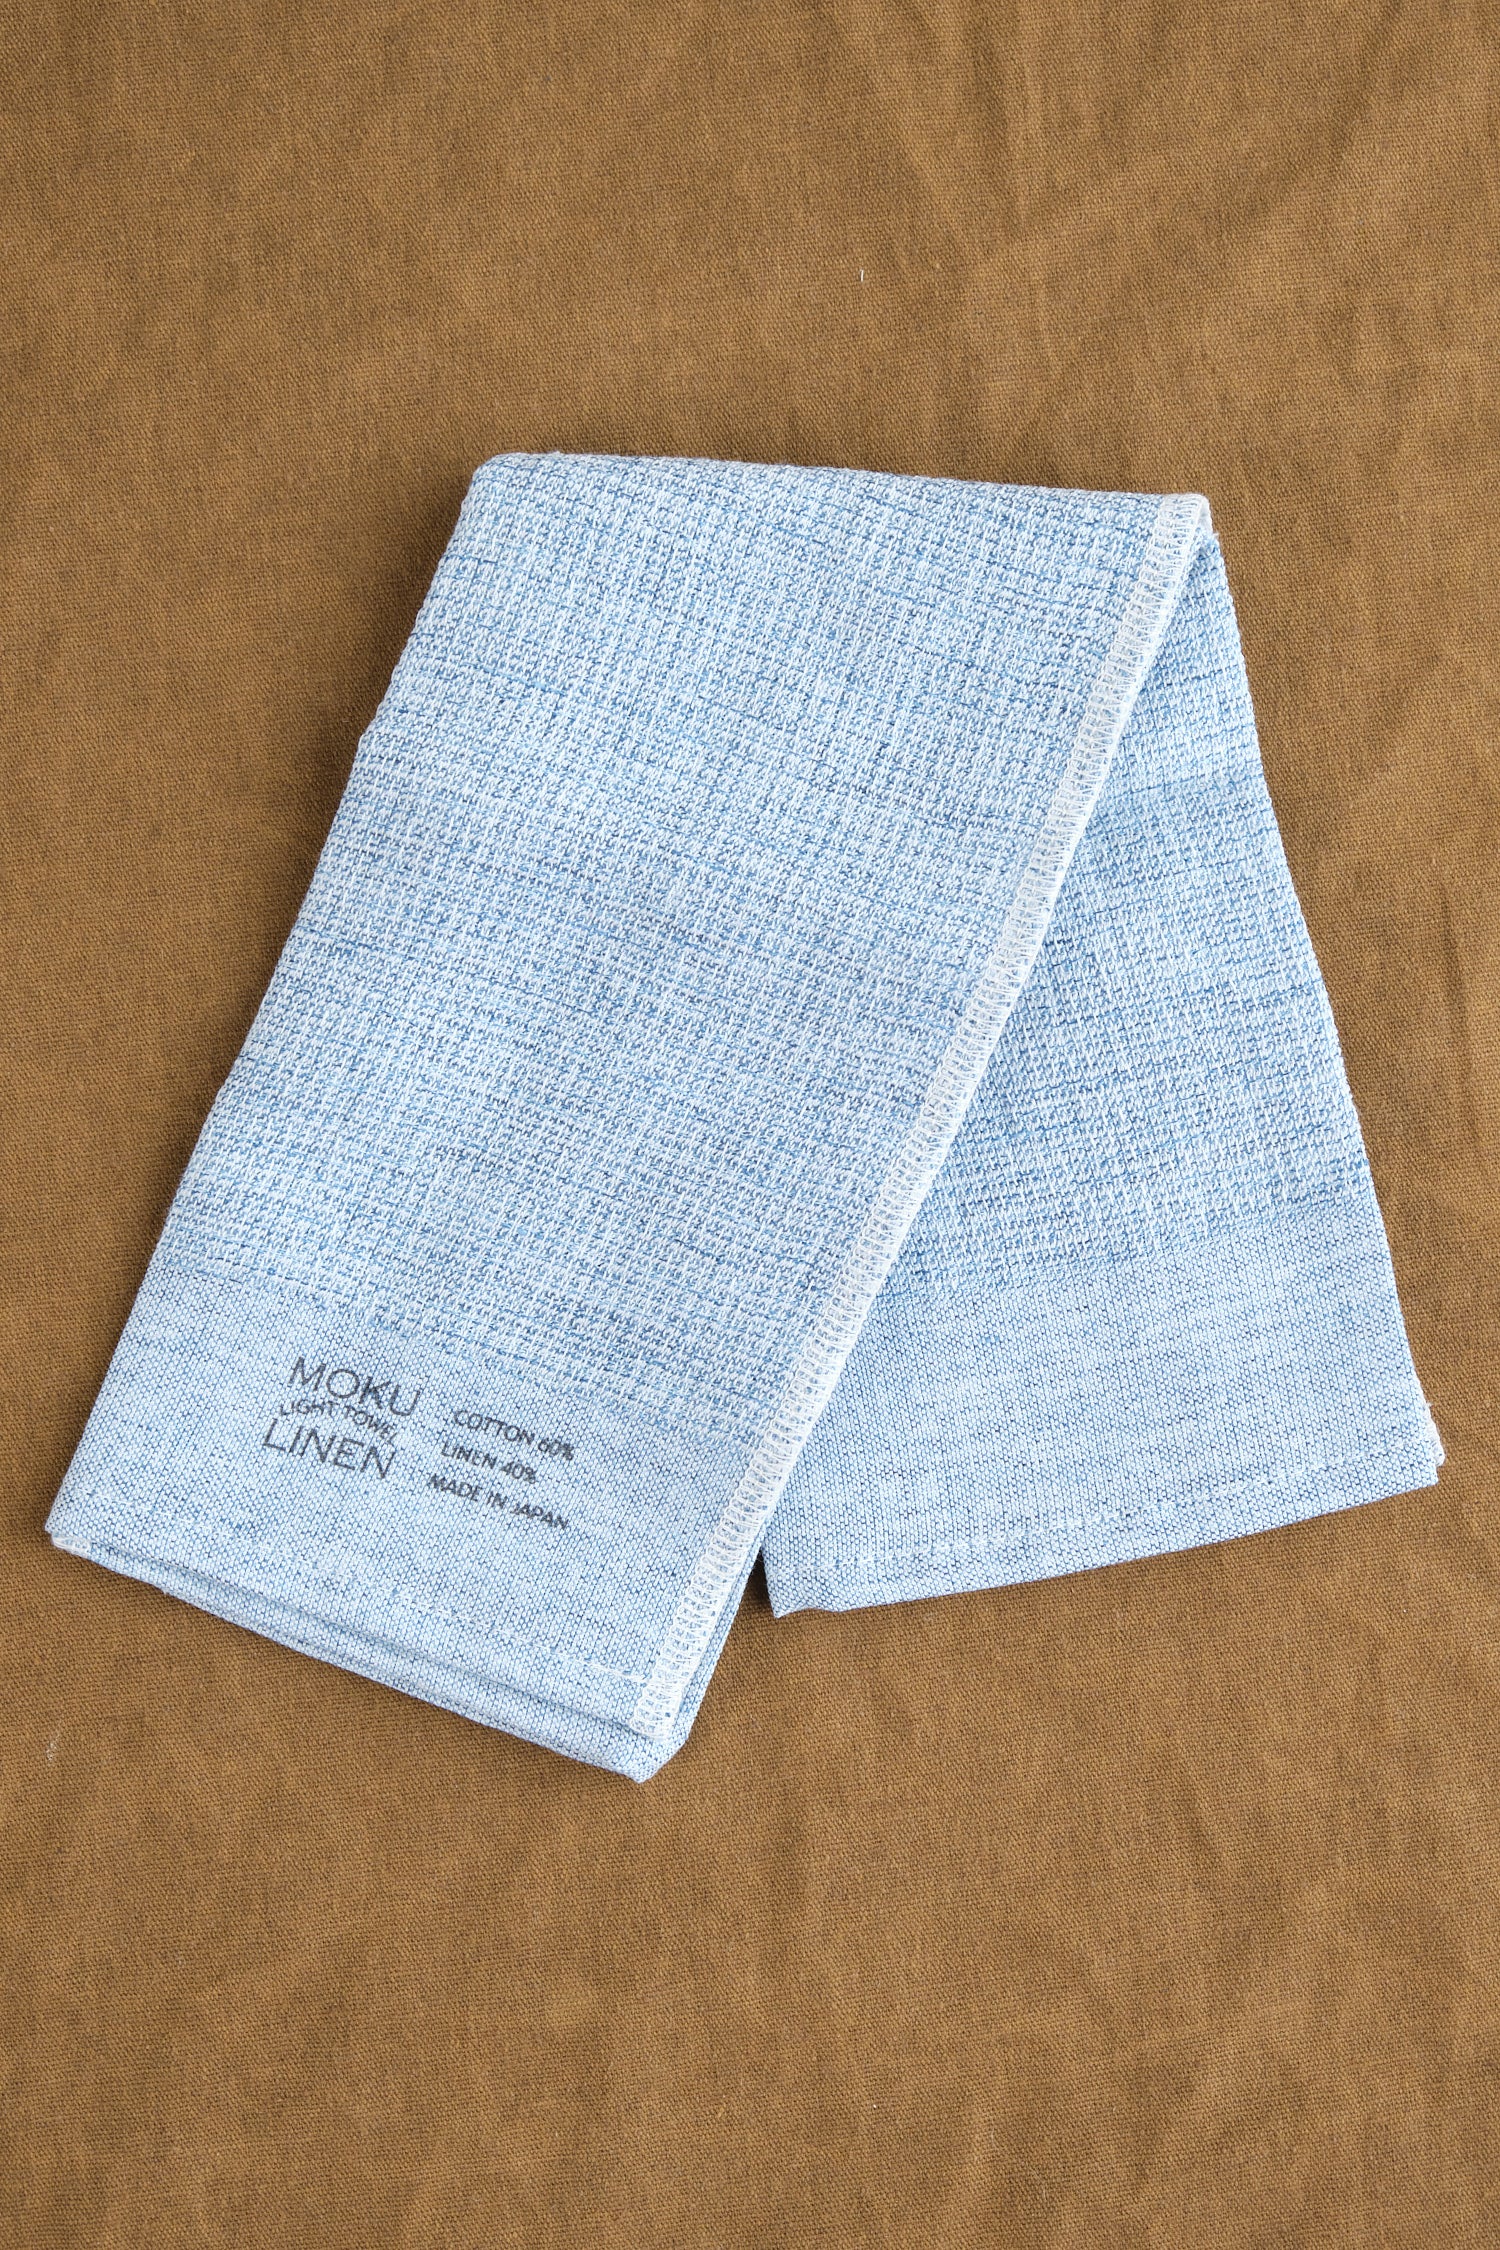 Unfolded Moku Linen Washcloth in Blue